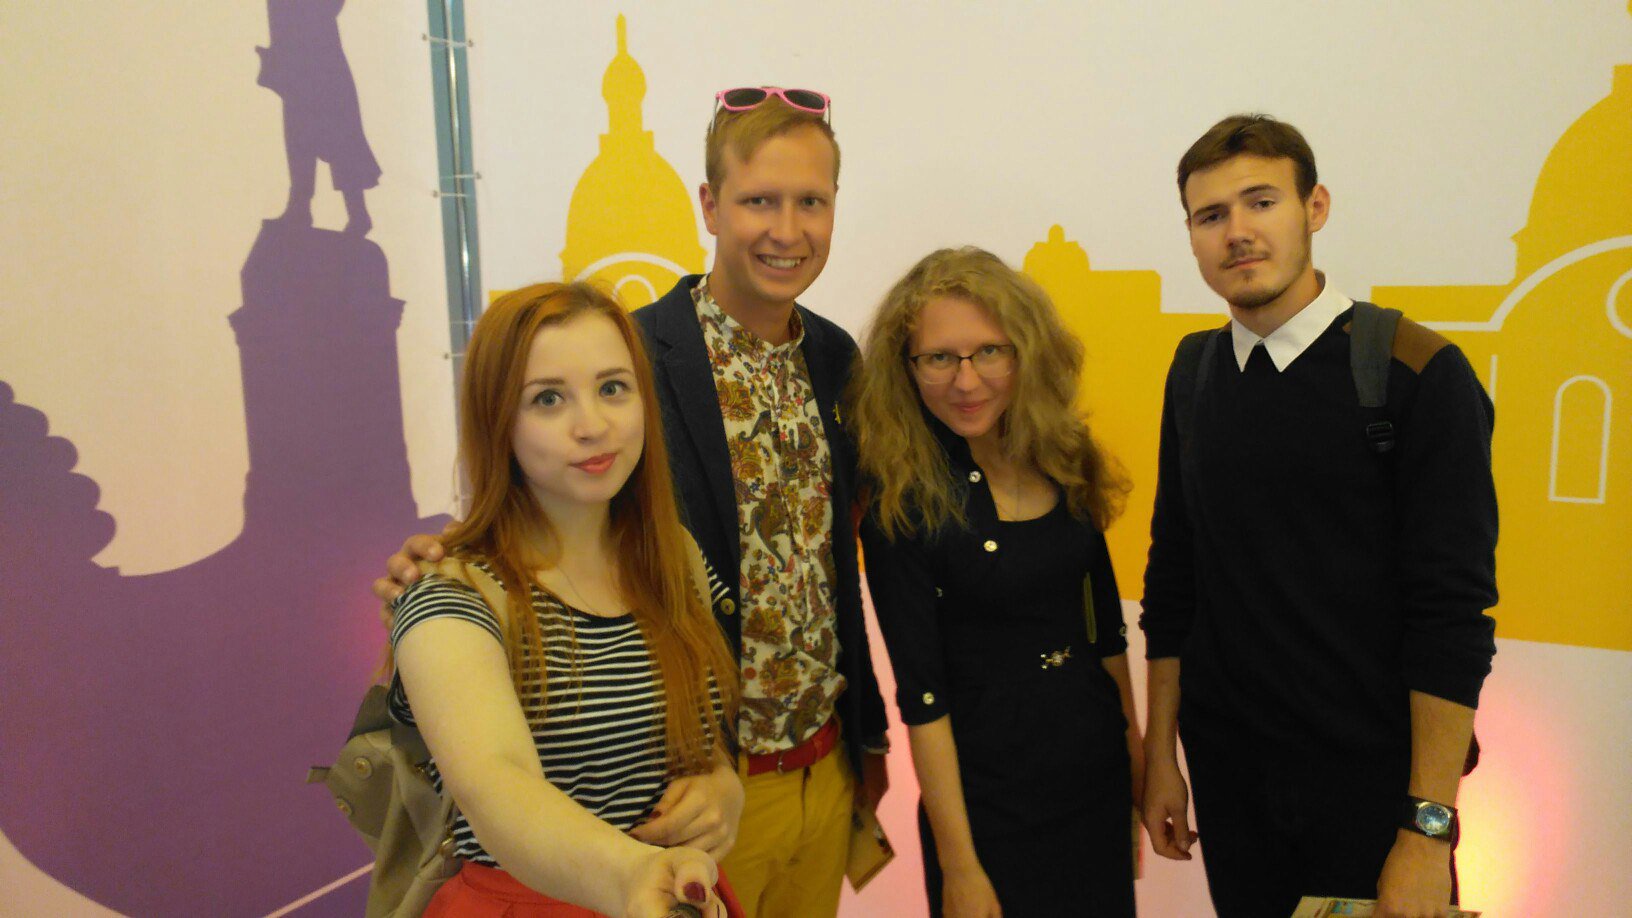 Псковский городской молодежный центр посетил VI Русские Ганзейский дни, которые проходили в Твери, с 17 по 19 июня.&nbsp;